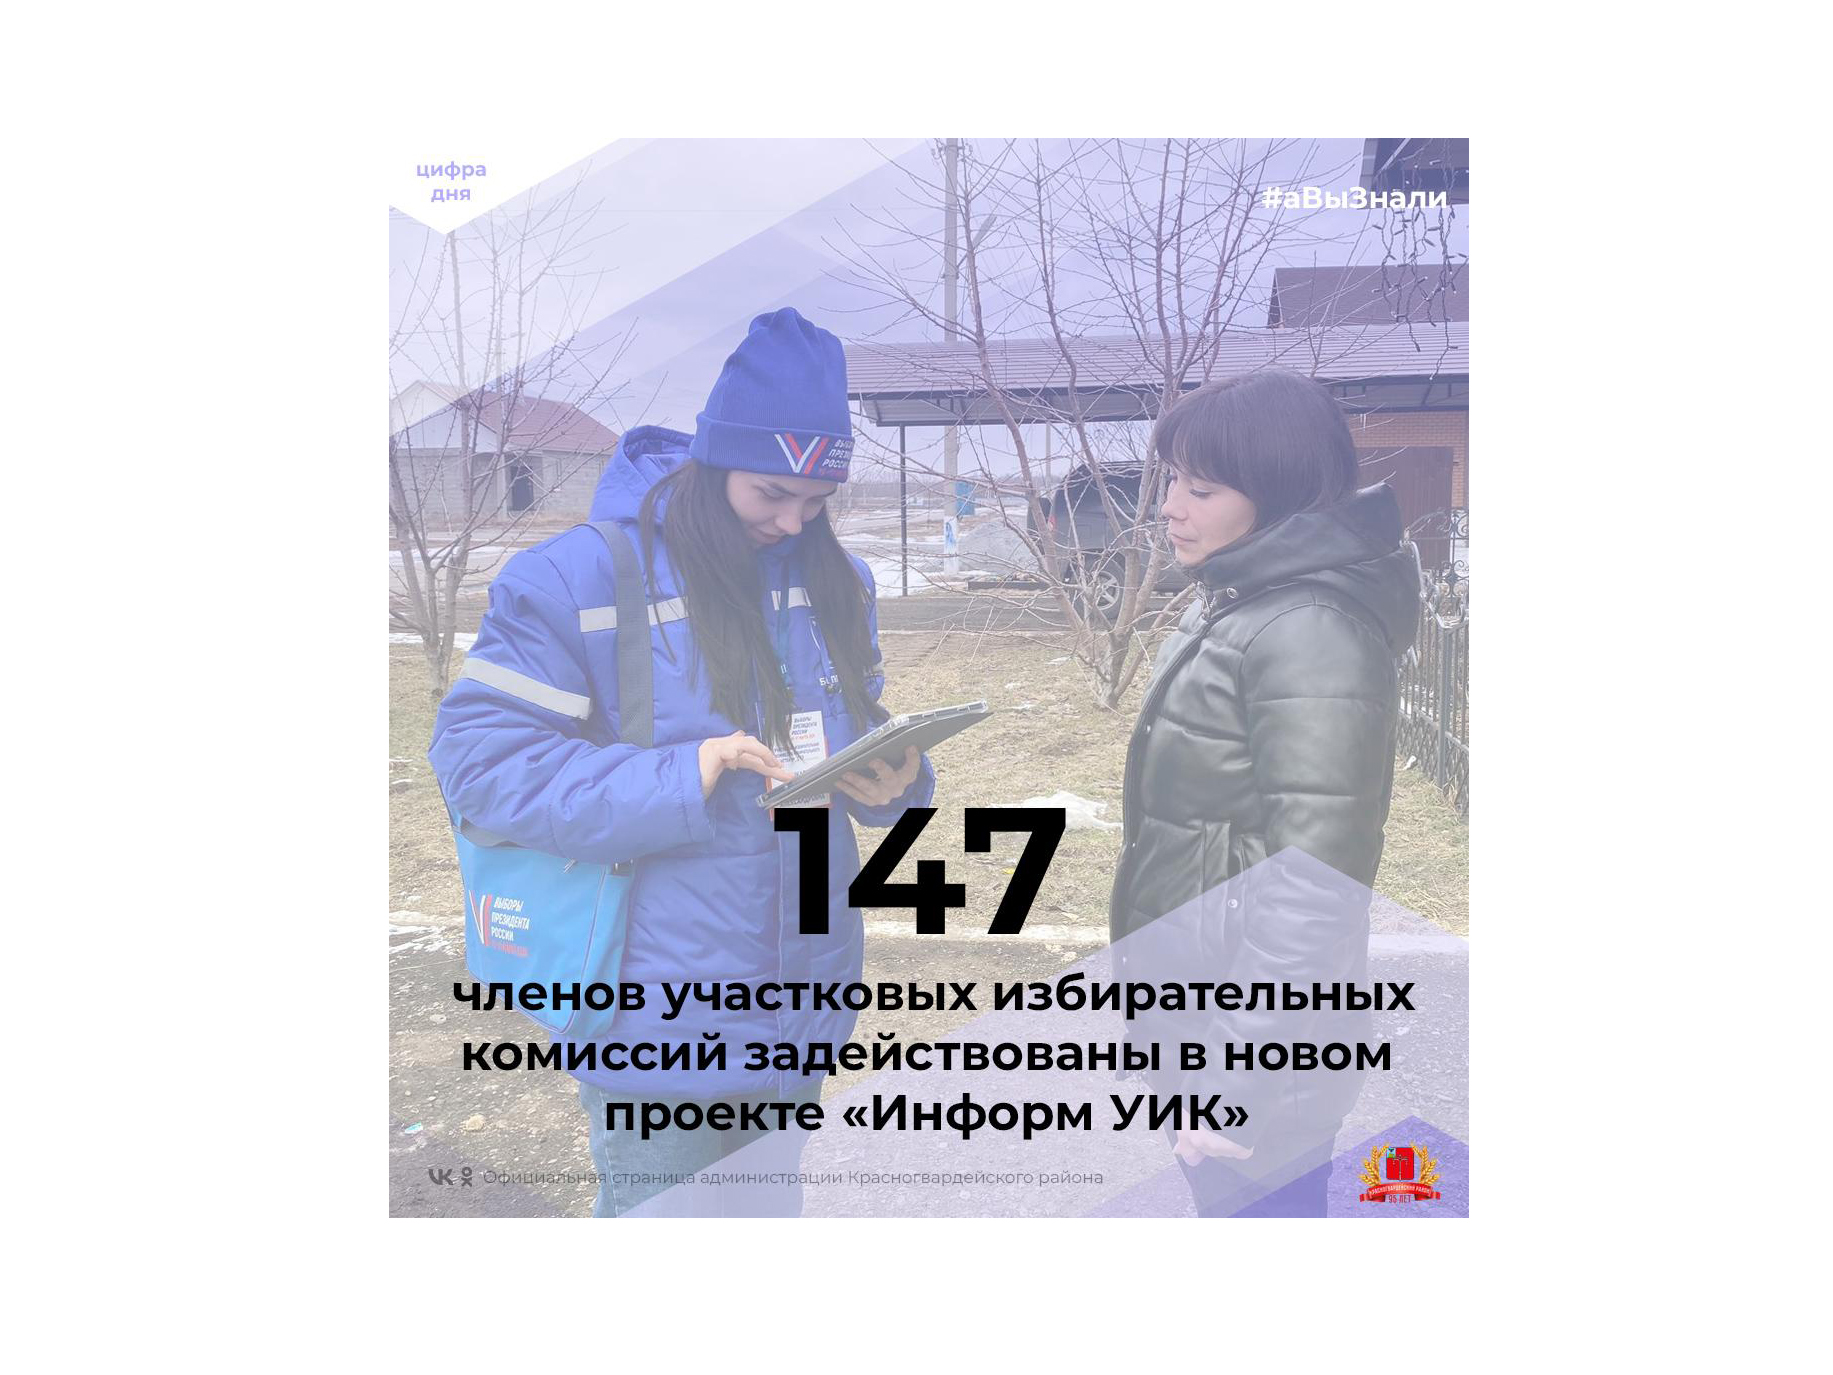 #аВыЗнали, что 147 членов участковых избирательных комиссий Красногвардейского района задействованы в новом проекте «Информ УИК»?.